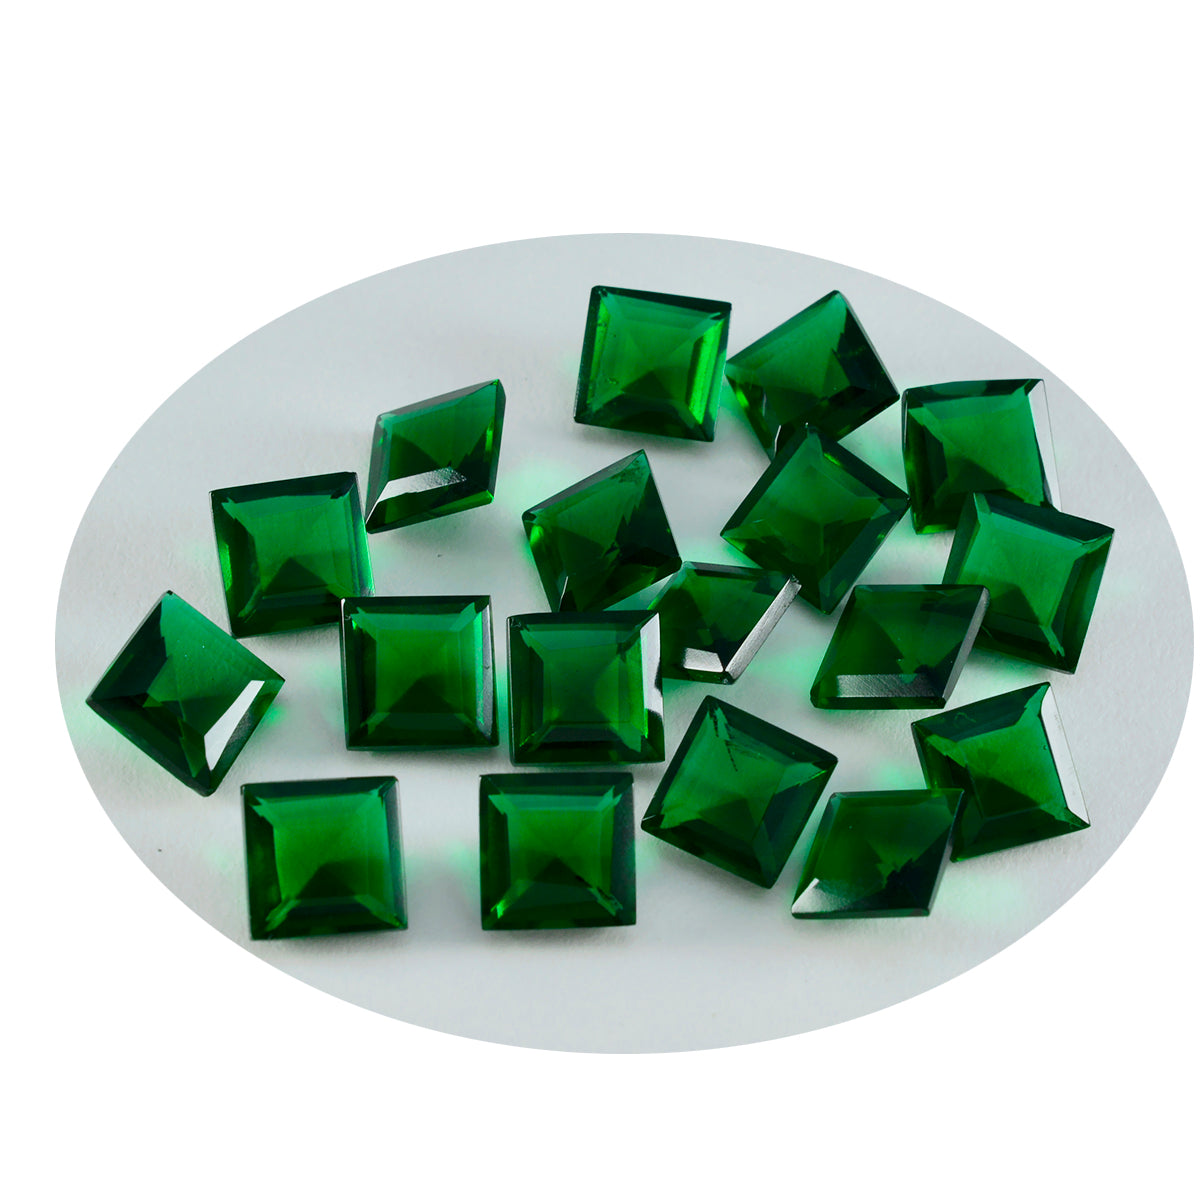 riyogems 1шт зеленый изумруд cz ограненный 7x7 мм квадратной формы драгоценный камень отличного качества